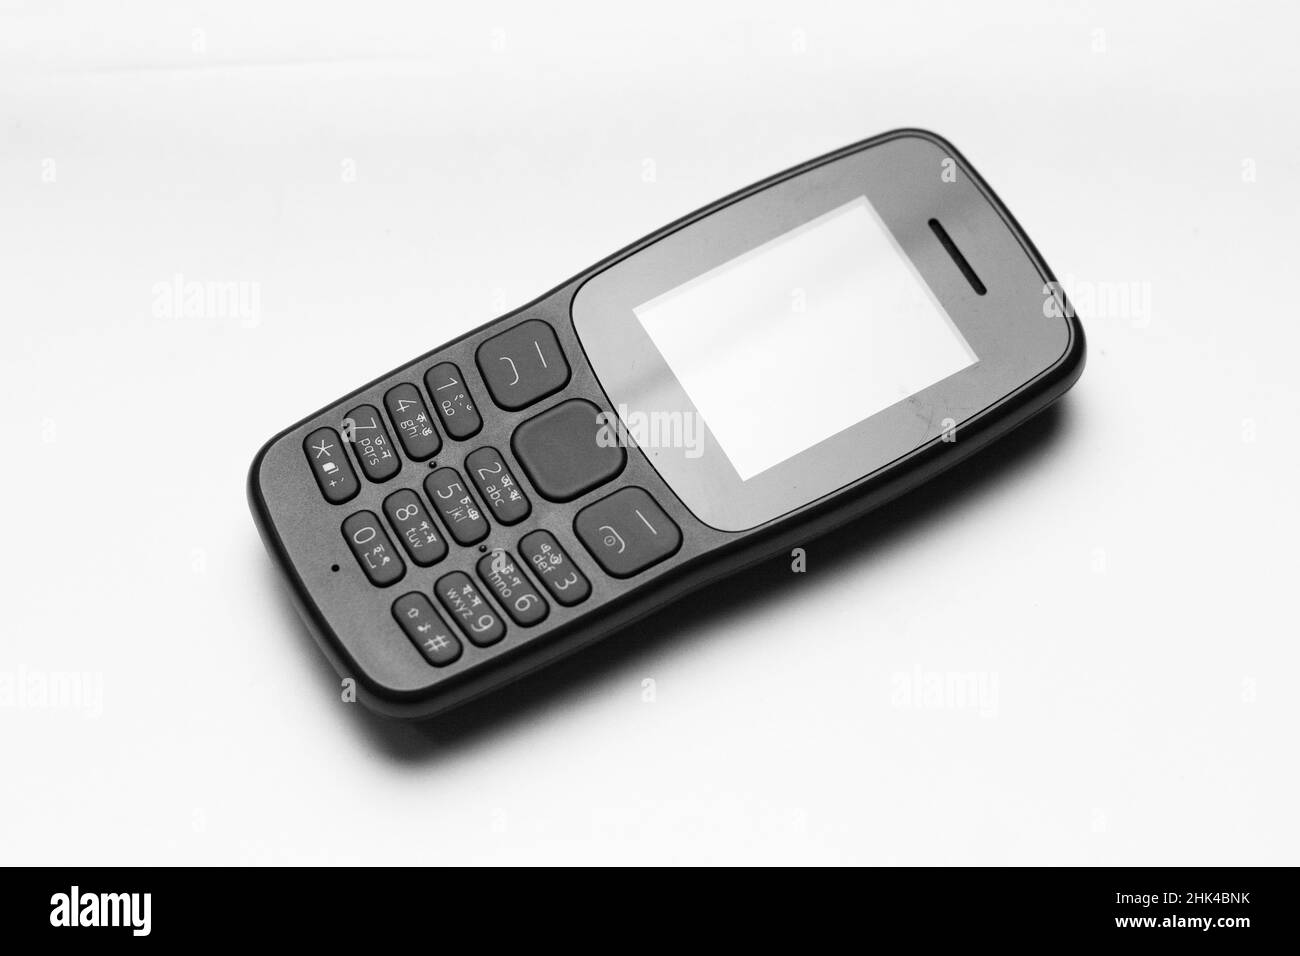 Telefono con funzione vecchio stile,copia del telefono con pulsante Nokia. Feature Phone è un piccolo telefono leggero solo per parlare e giocare semplice serpente gioco Foto Stock